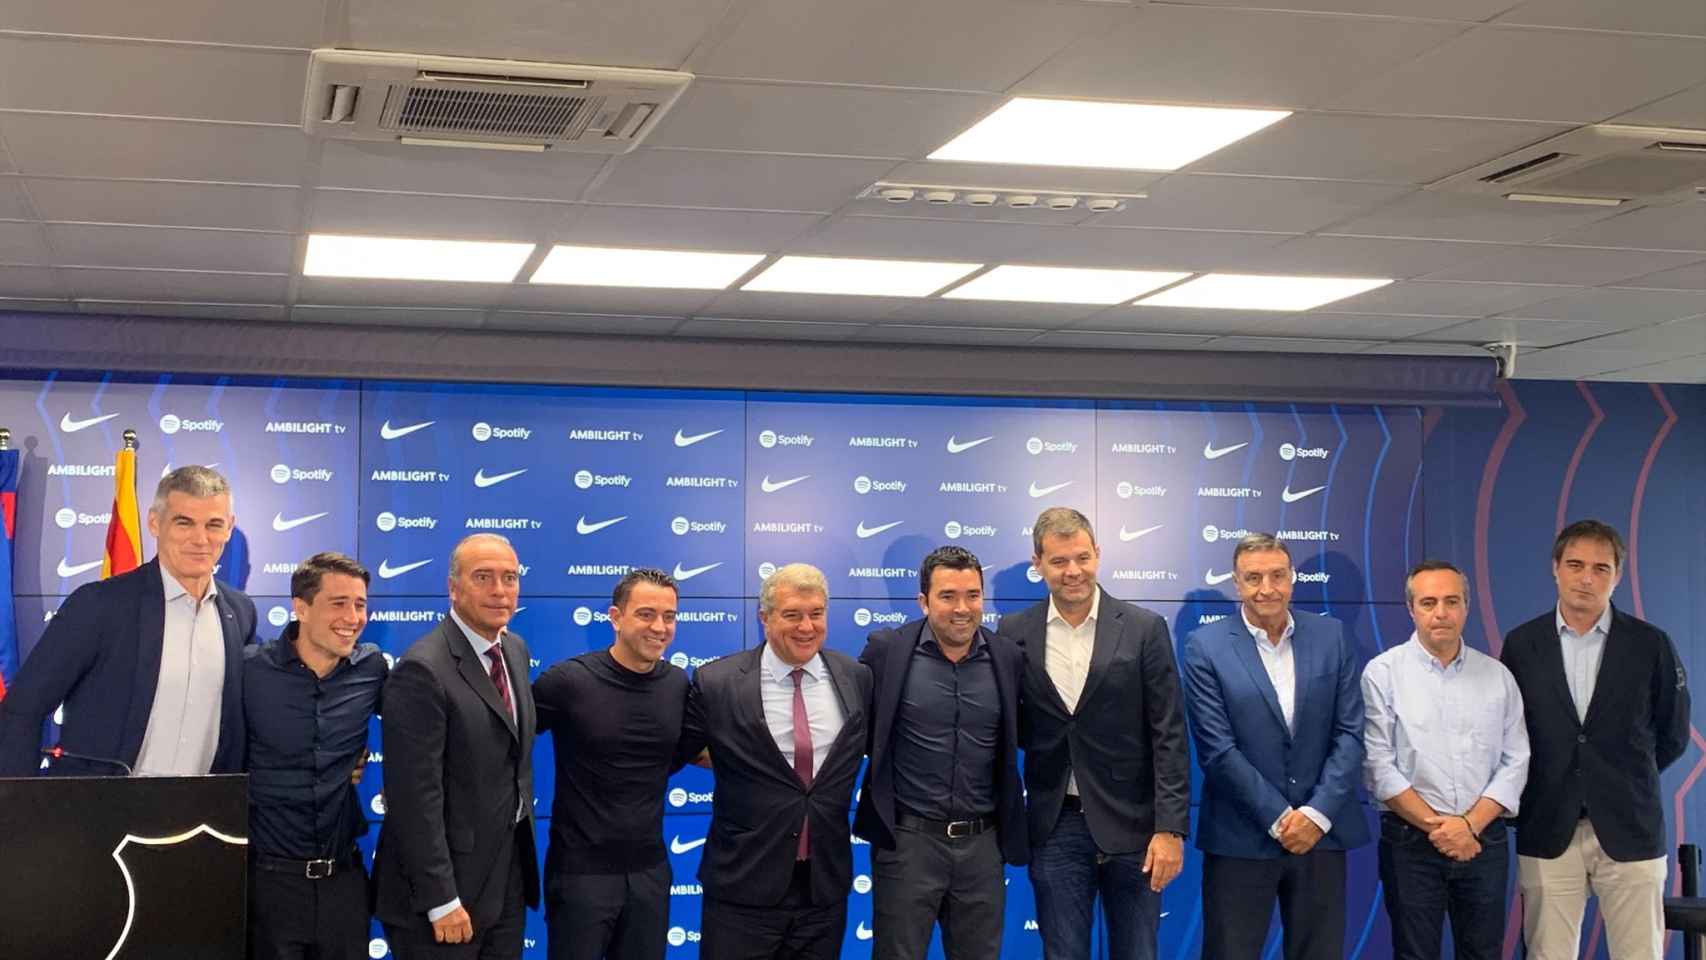 La nueva estructura deportiva del Barça con Bojan y Deco como nuevas incorporaciones